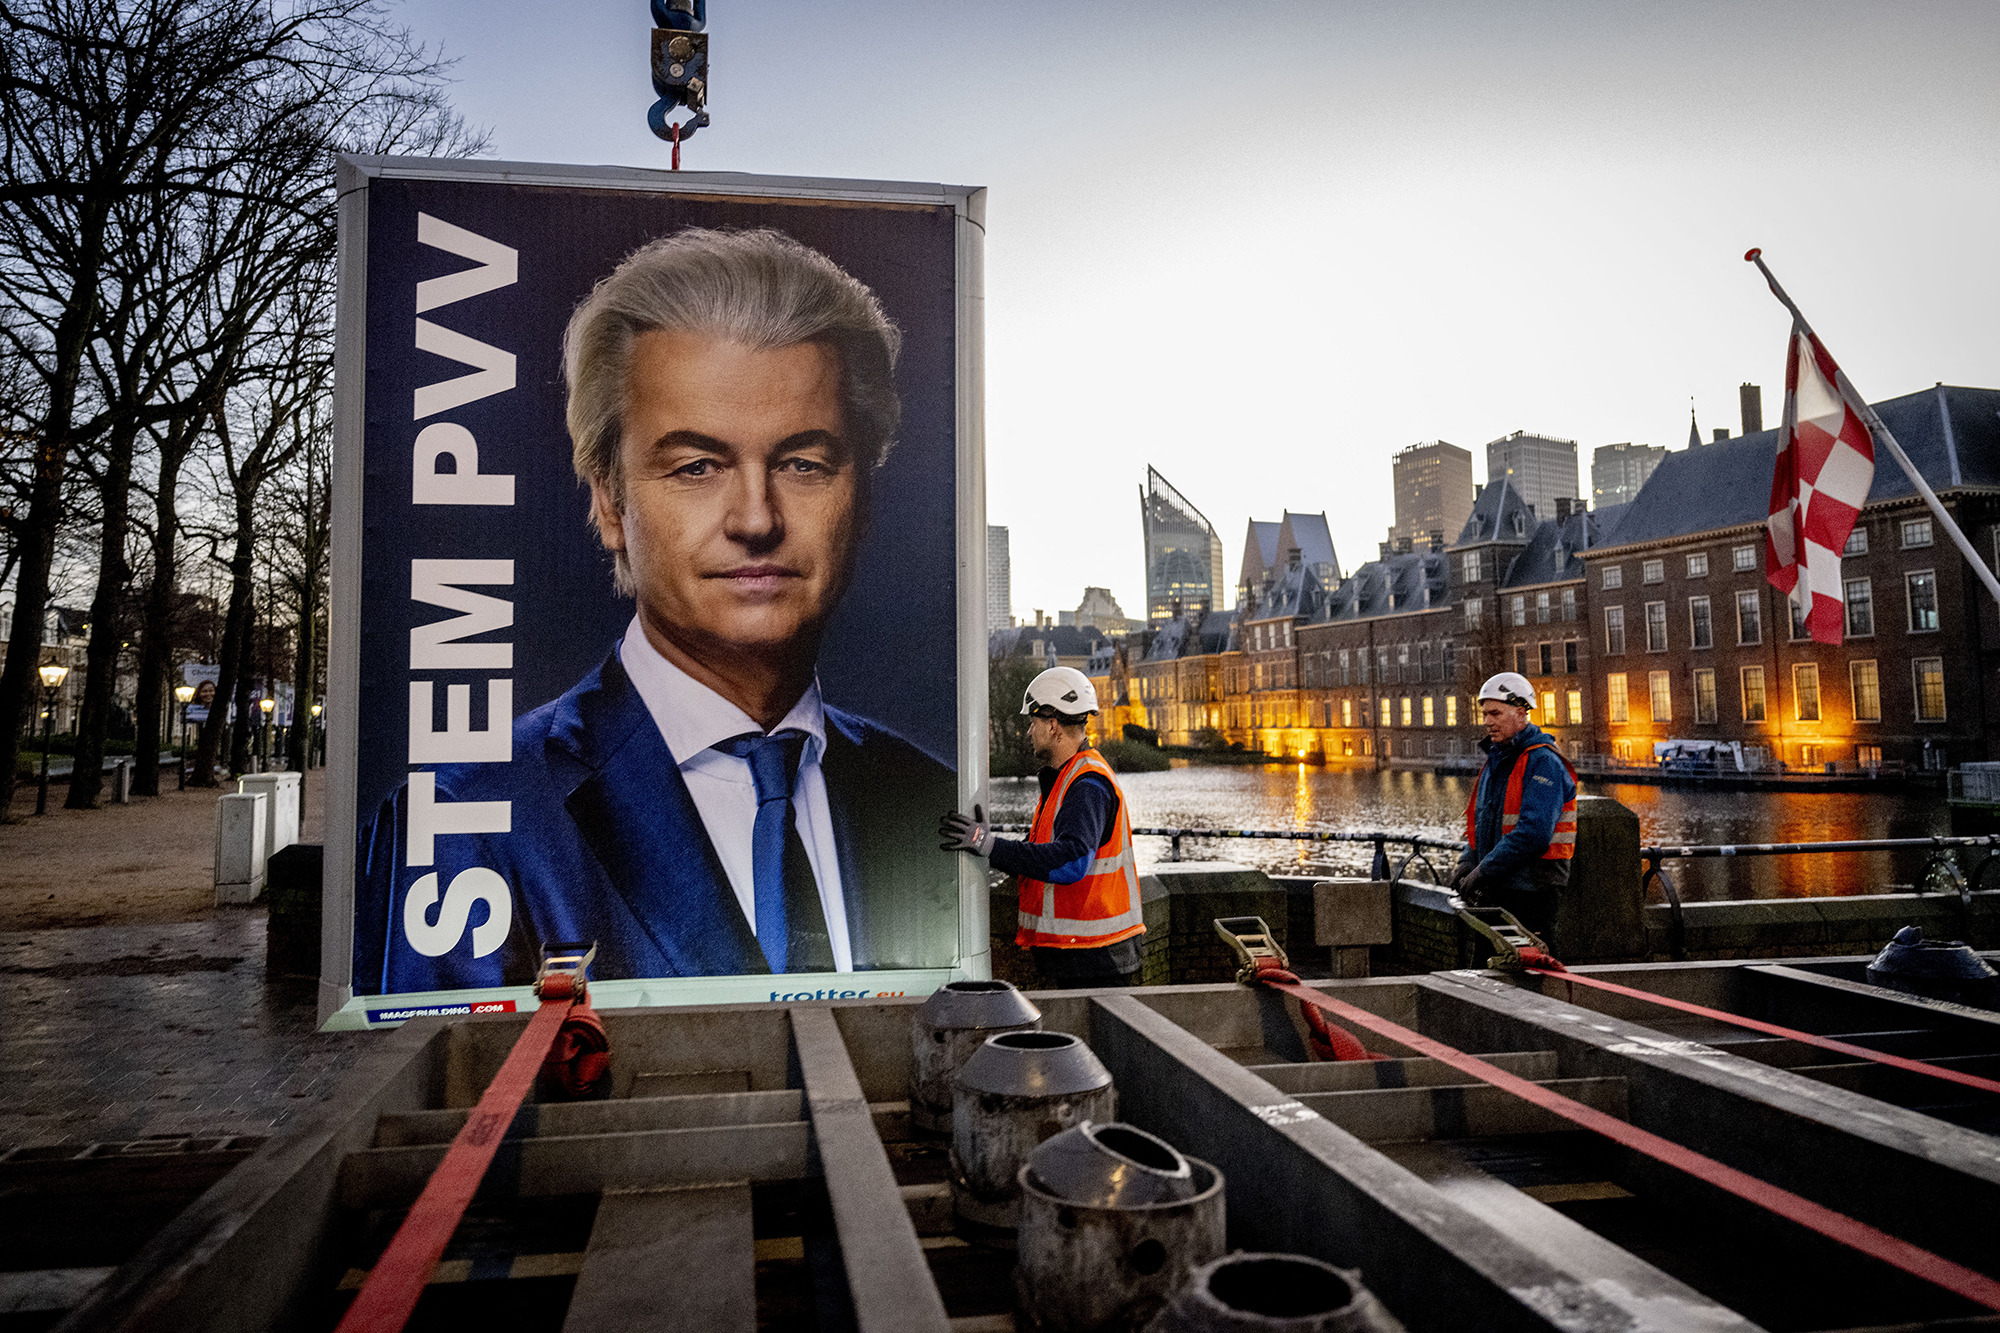 Am Tag danach verschwindet die Wahlwerbung wieder (Bild: Robin Utrecht/ANP/AFP)